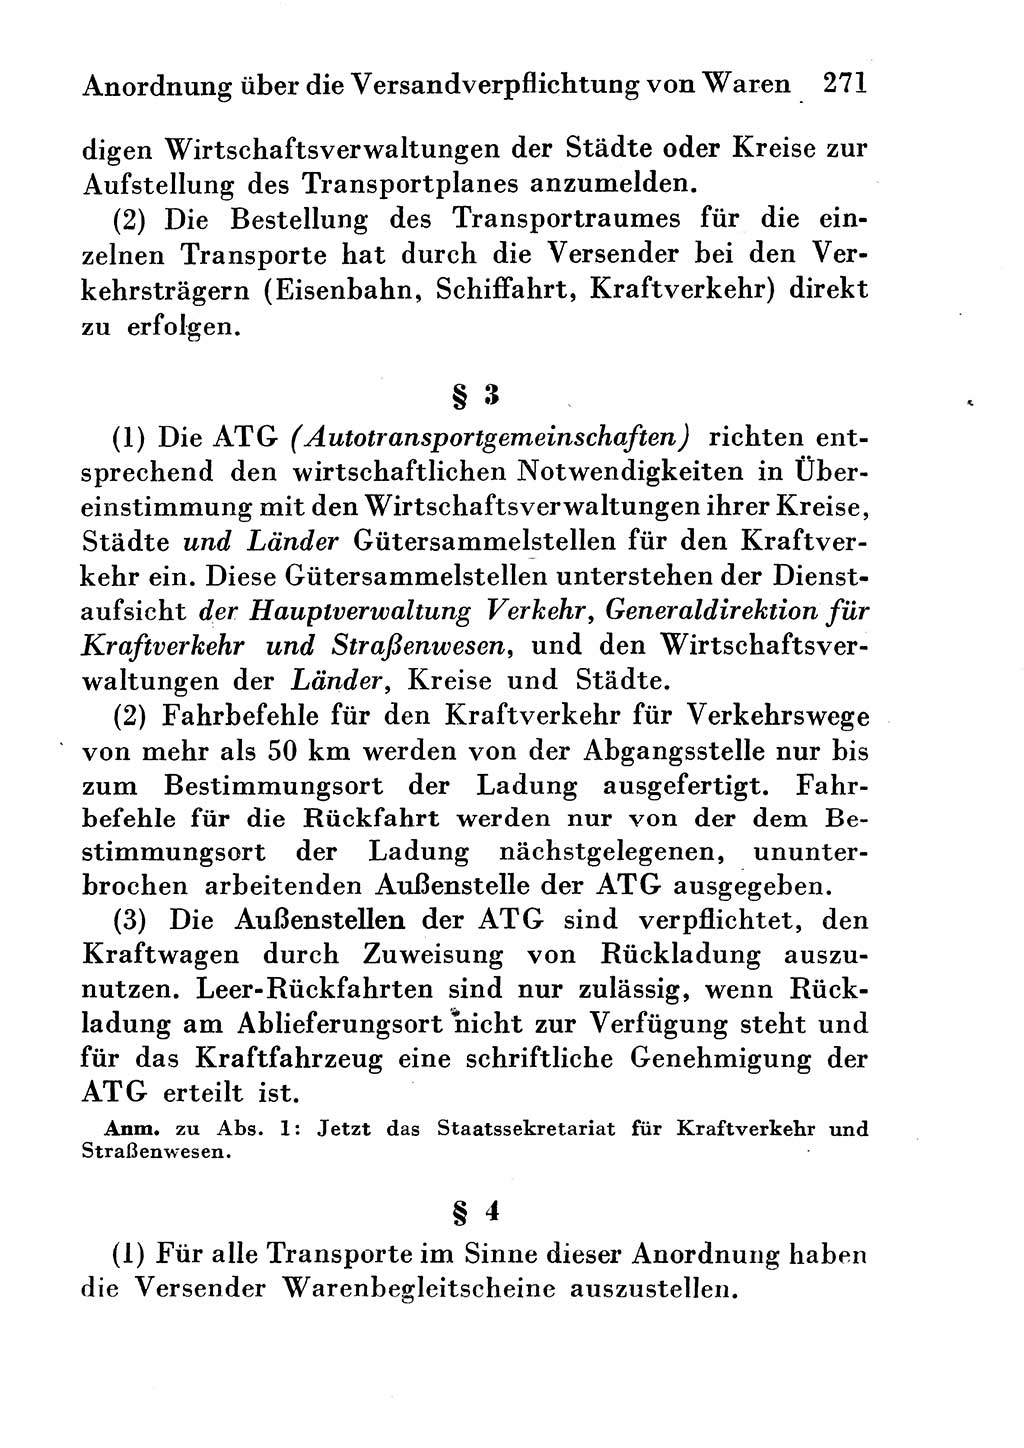 Strafgesetzbuch (StGB) und andere Strafgesetze [Deutsche Demokratische Republik (DDR)] 1954, Seite 271 (StGB Strafges. DDR 1954, S. 271)